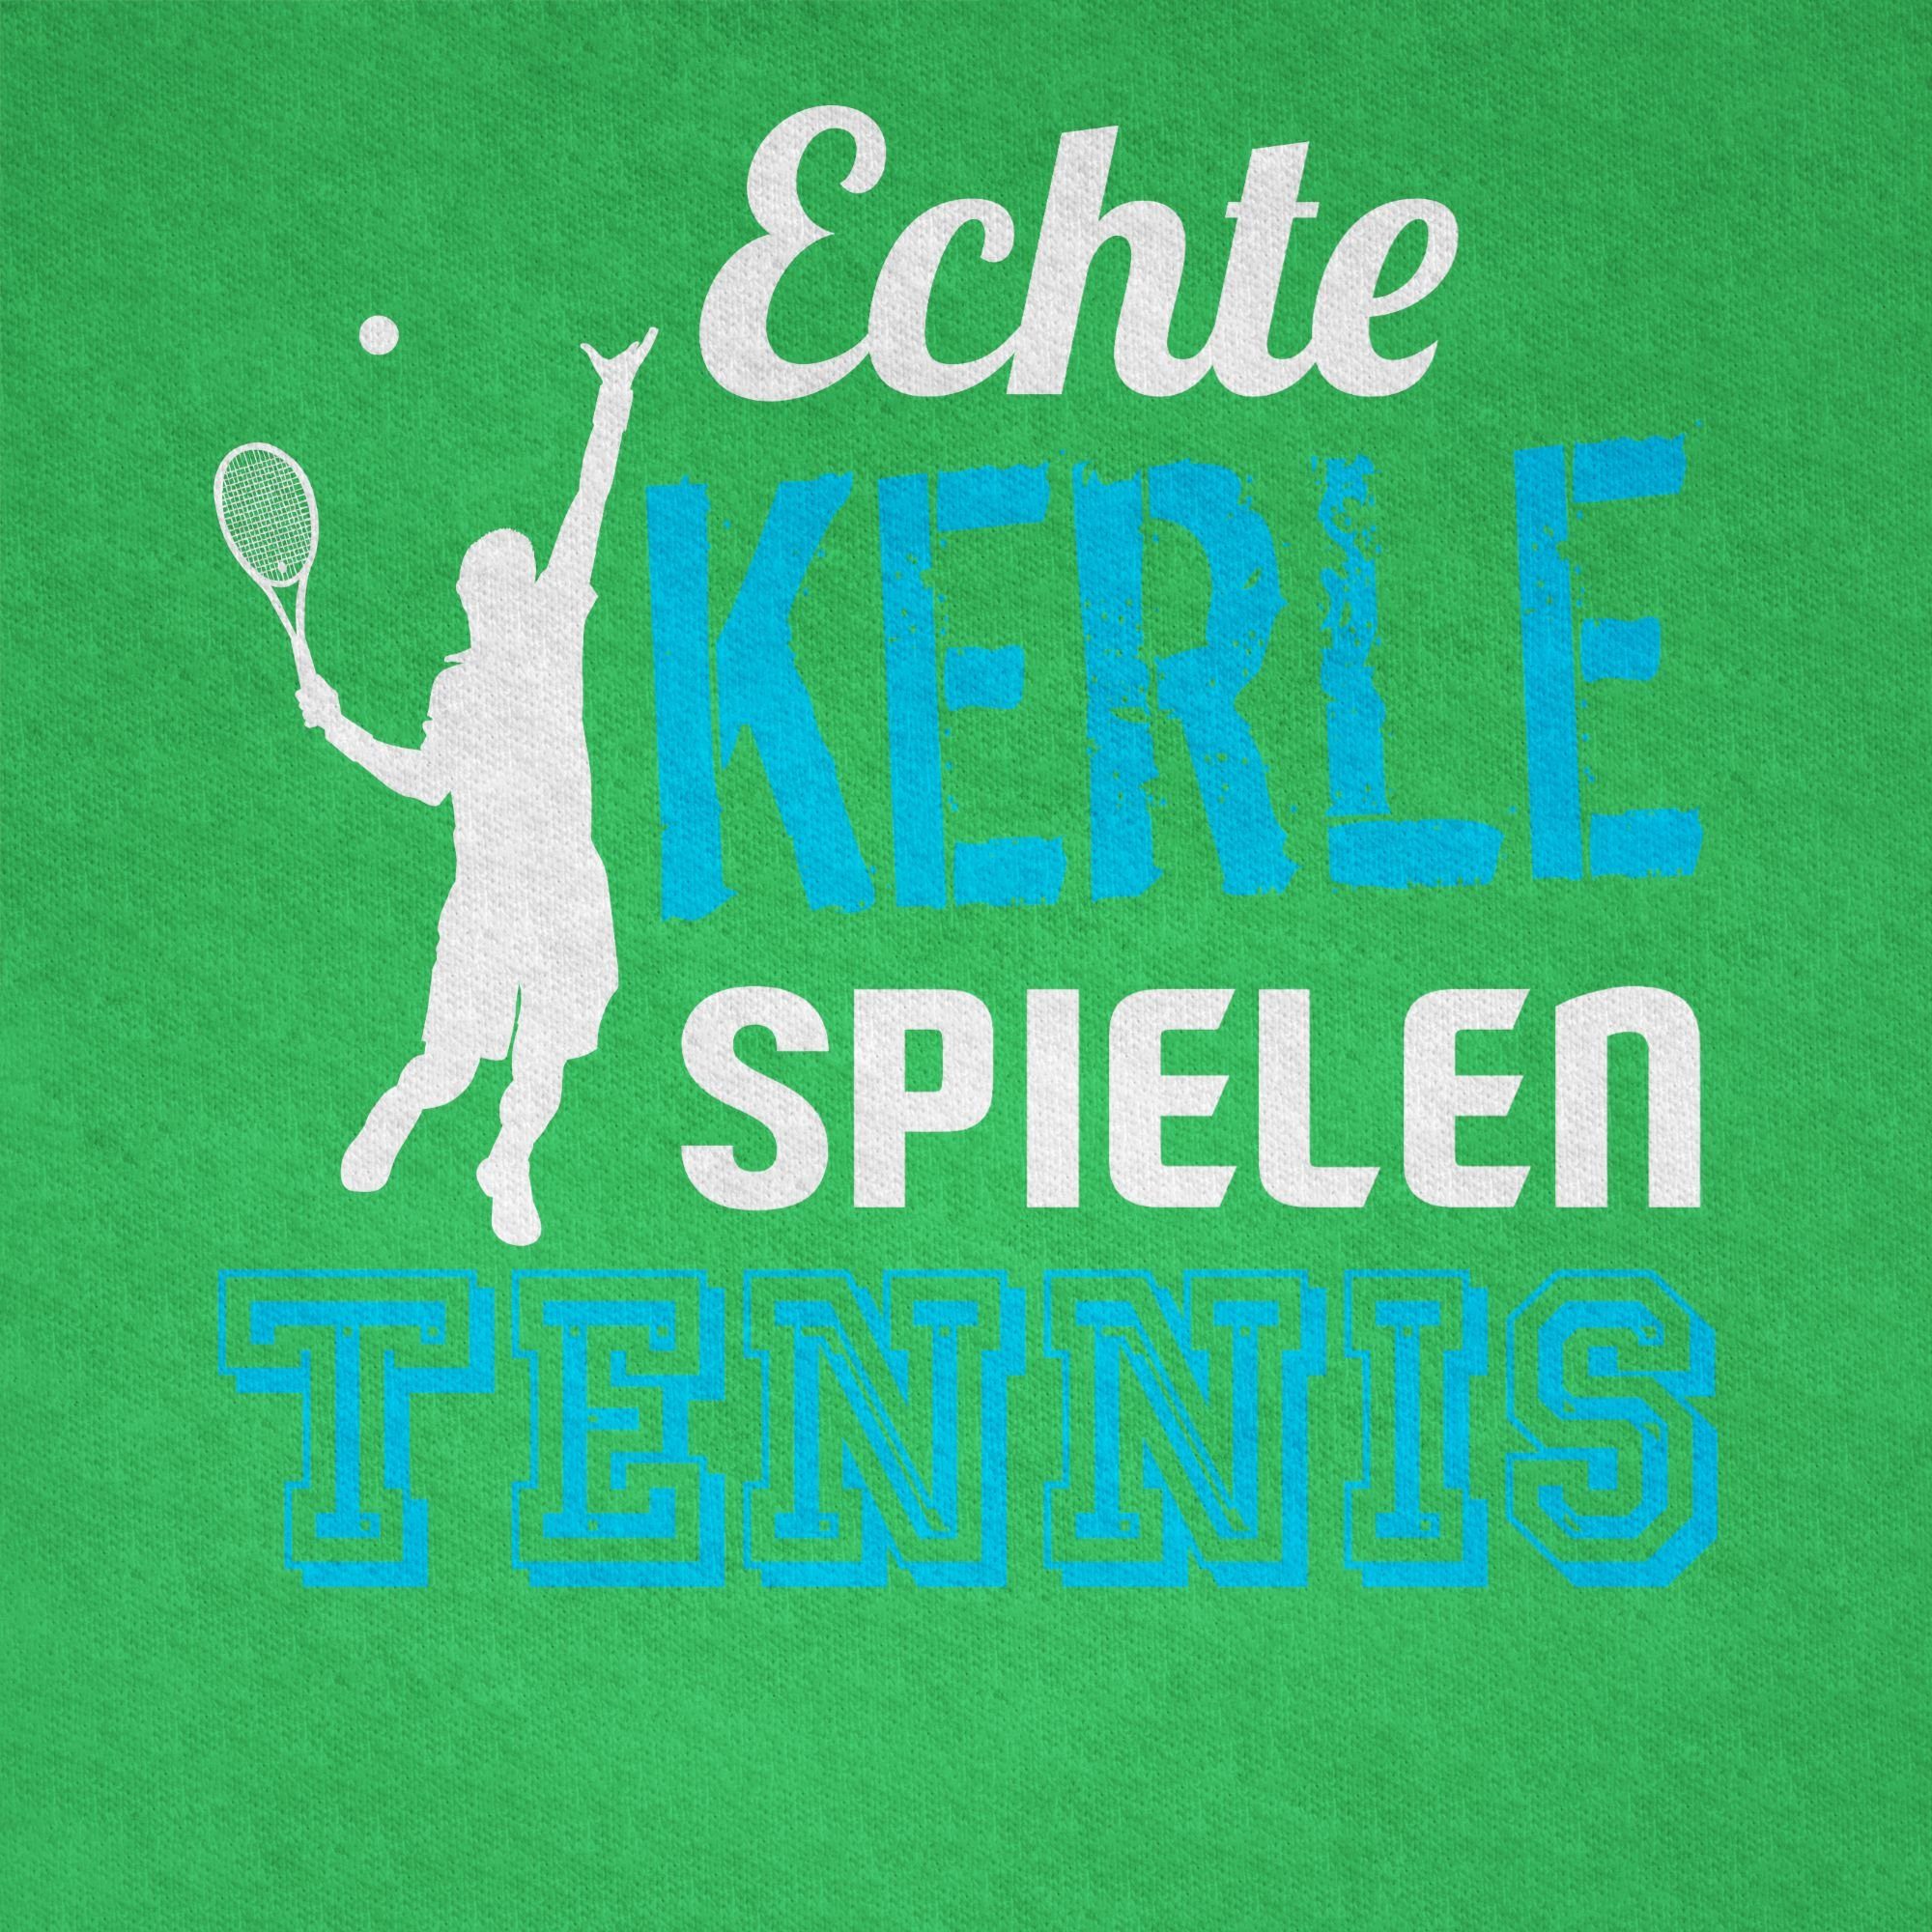 Tennis spielen Kerle Kleidung T-Shirt Sport Kinder Grün Shirtracer 3 Echte